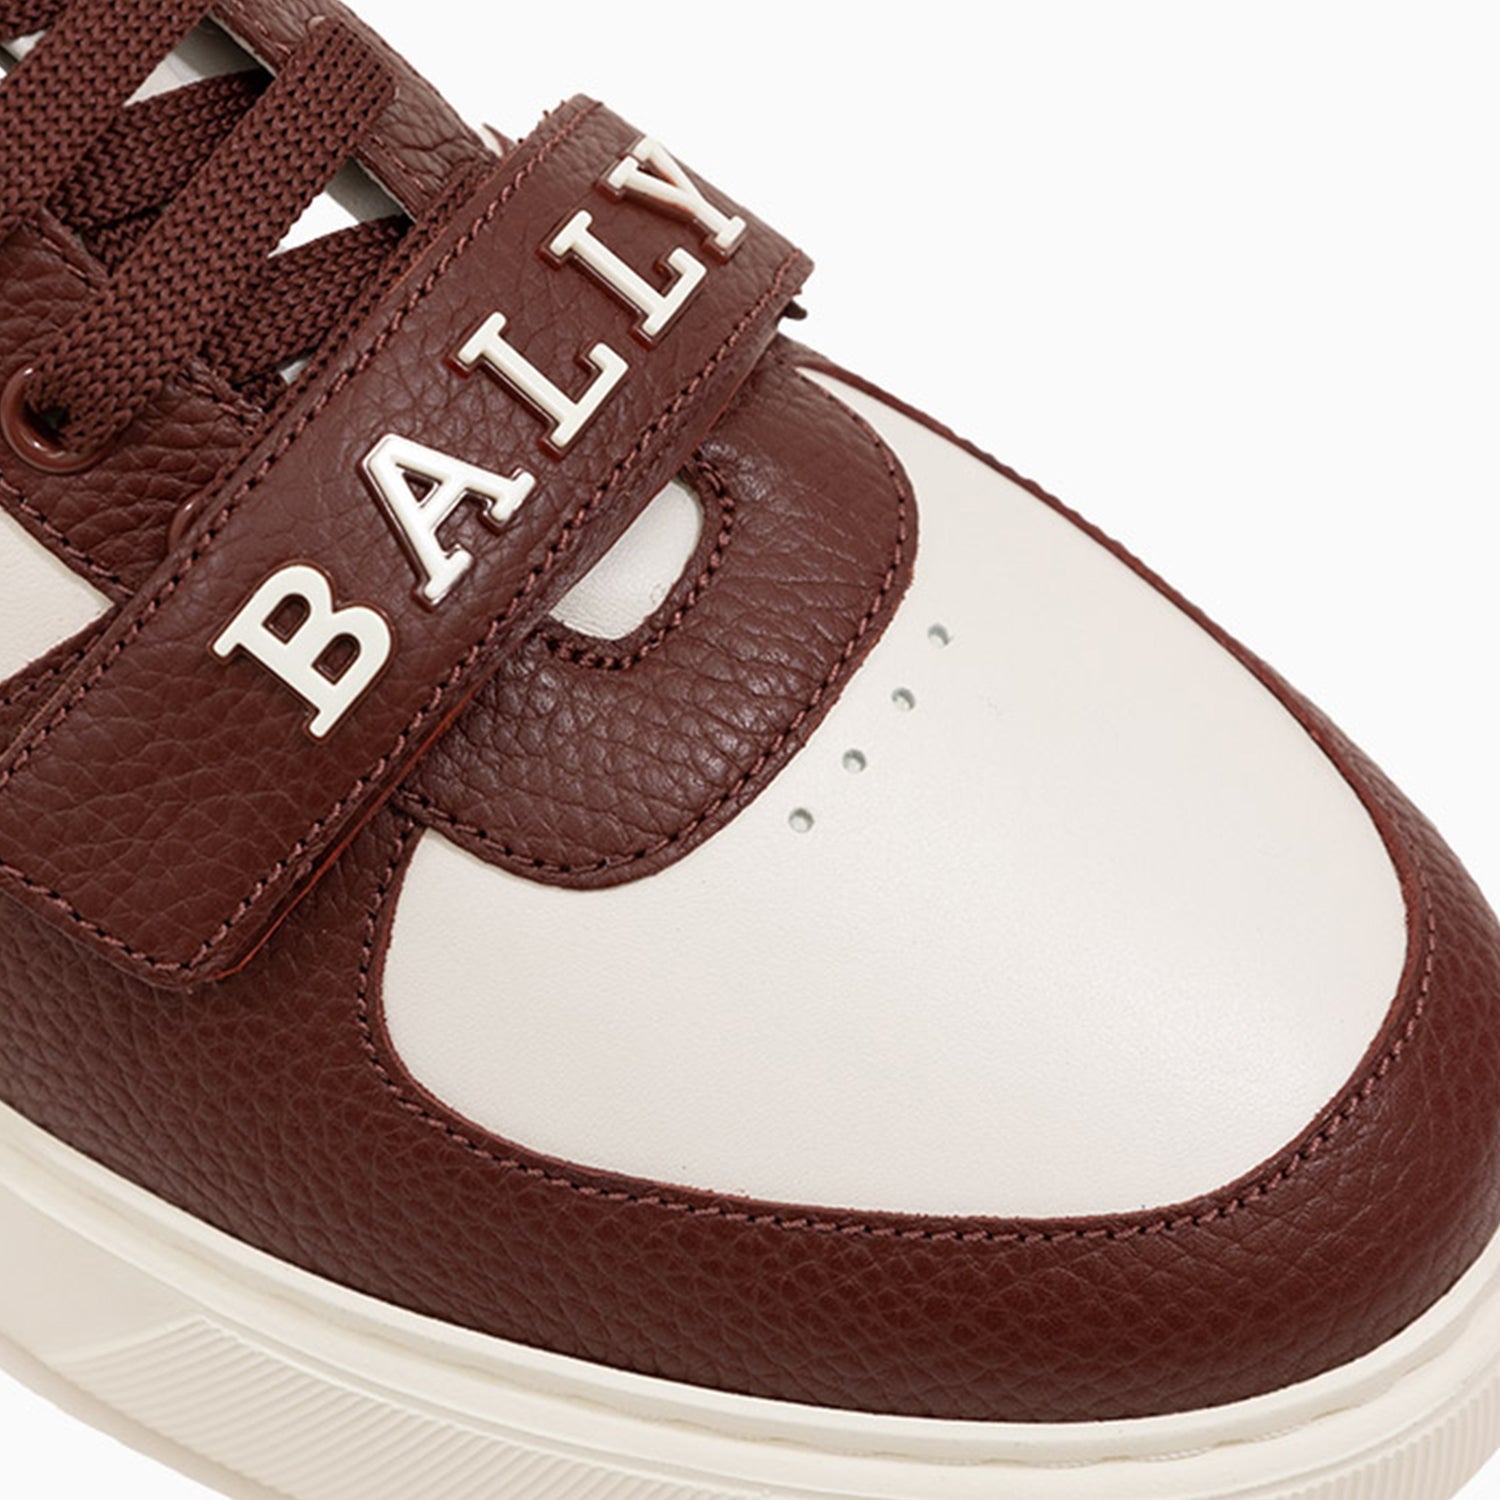 bally-mens-merryk-sneaker-merryk-vt238-i344